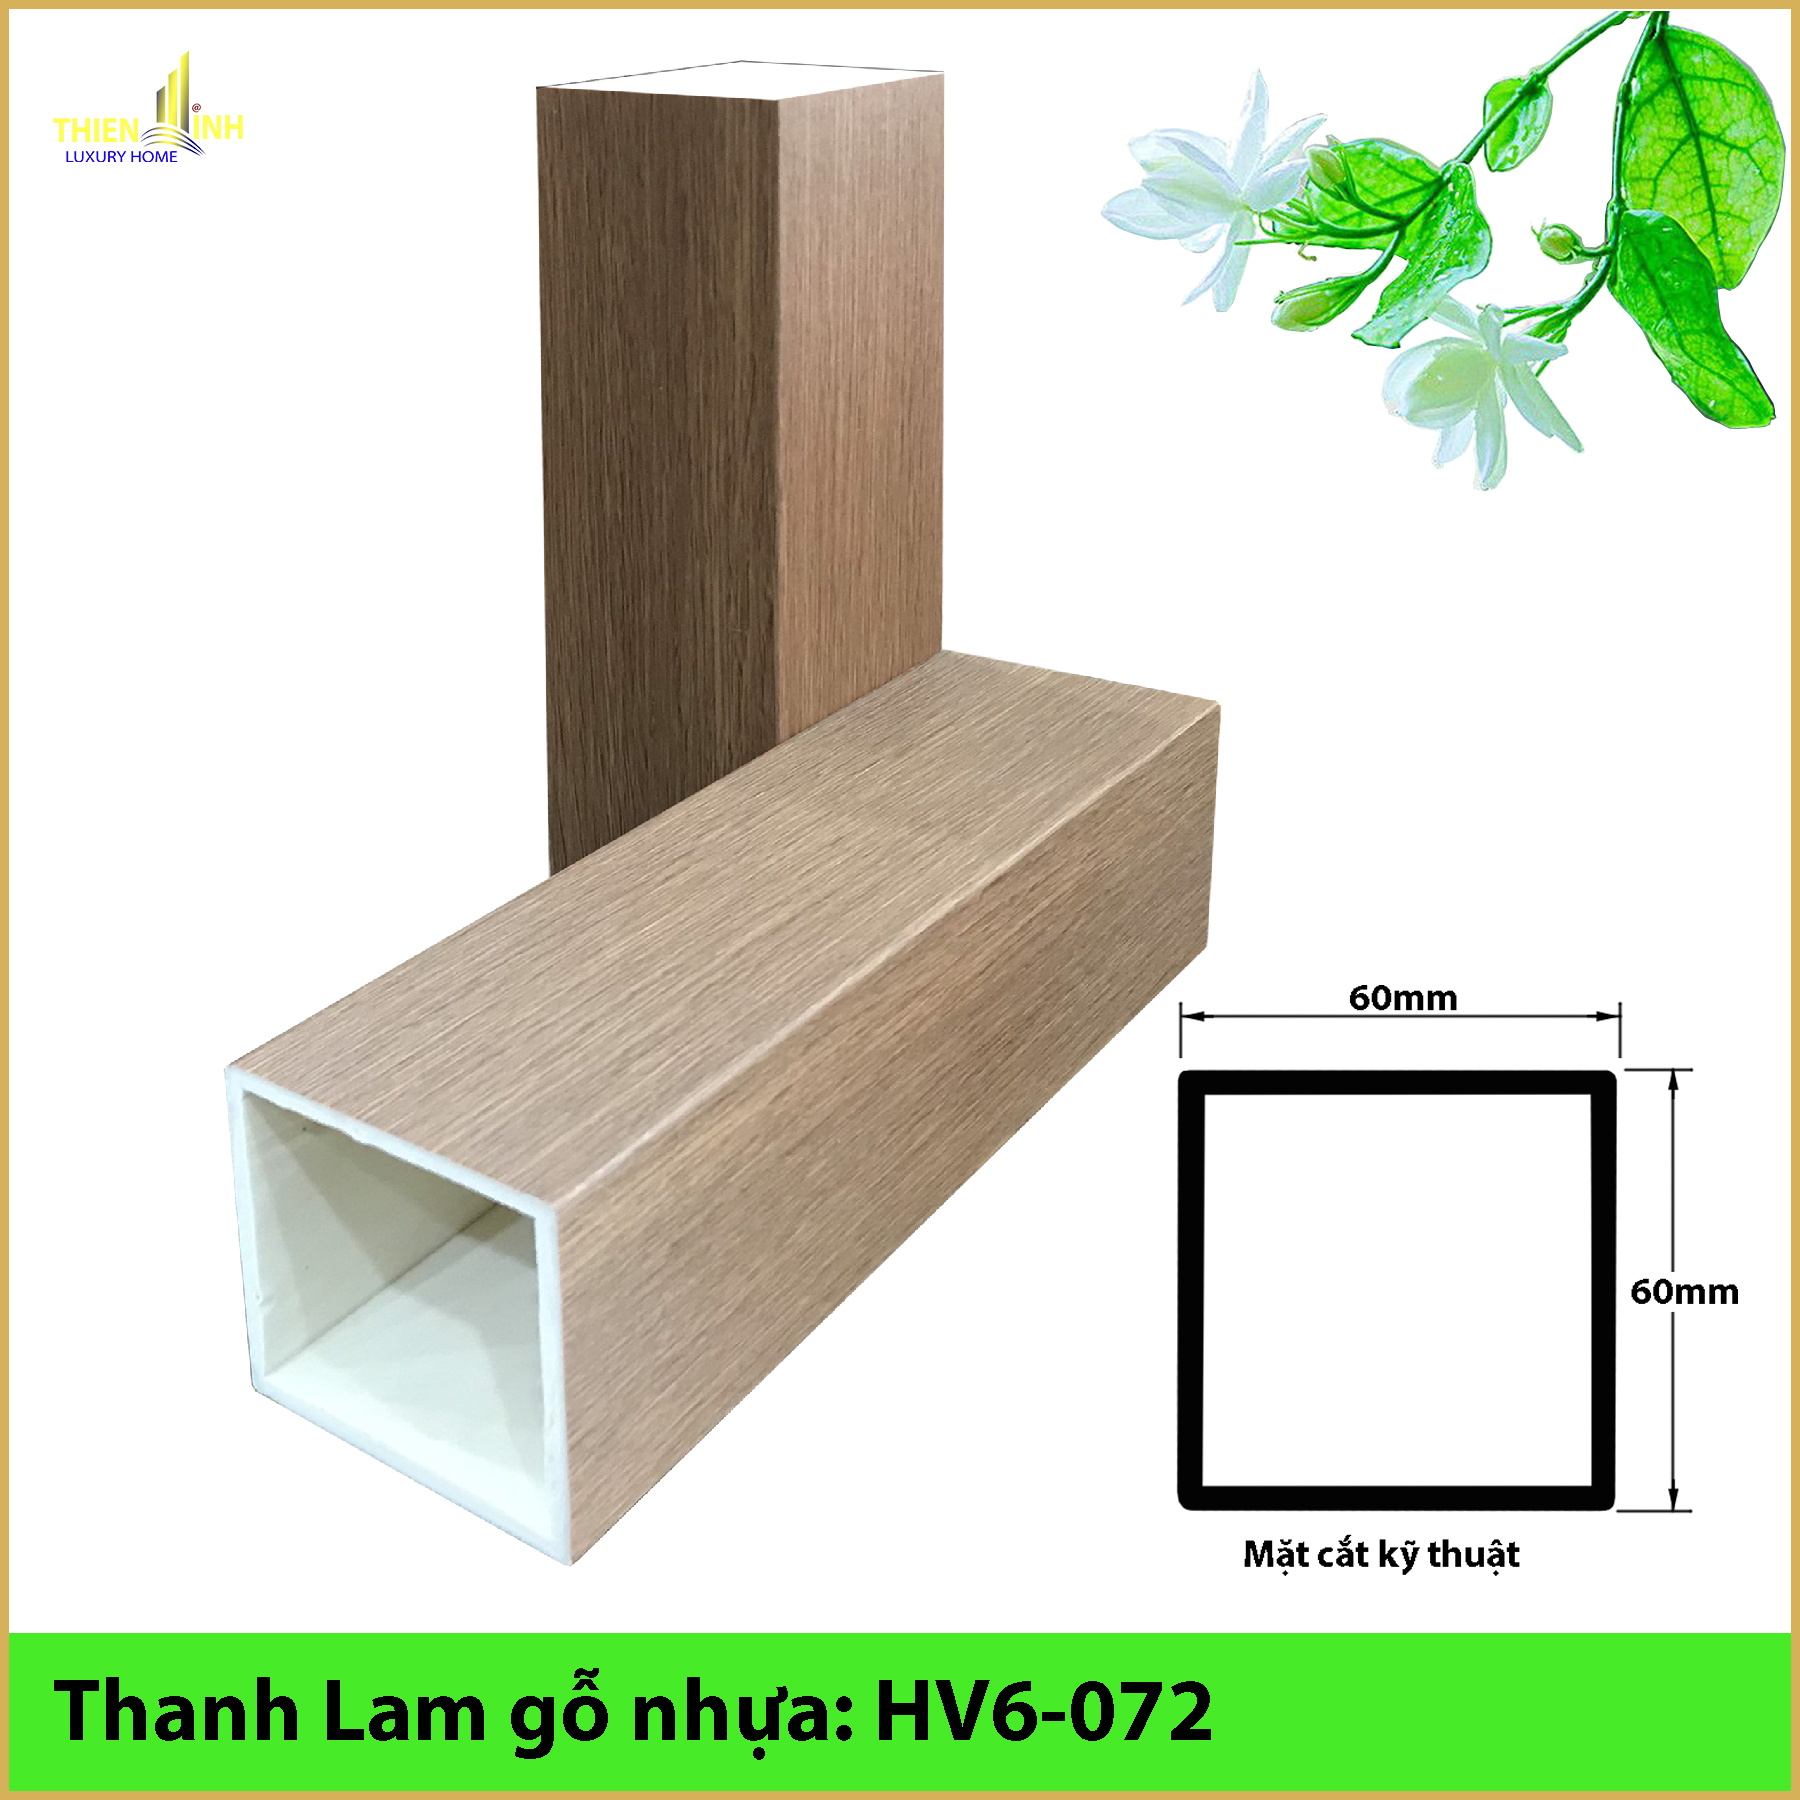 Thanh Lam gỗ nhựa HV6-072